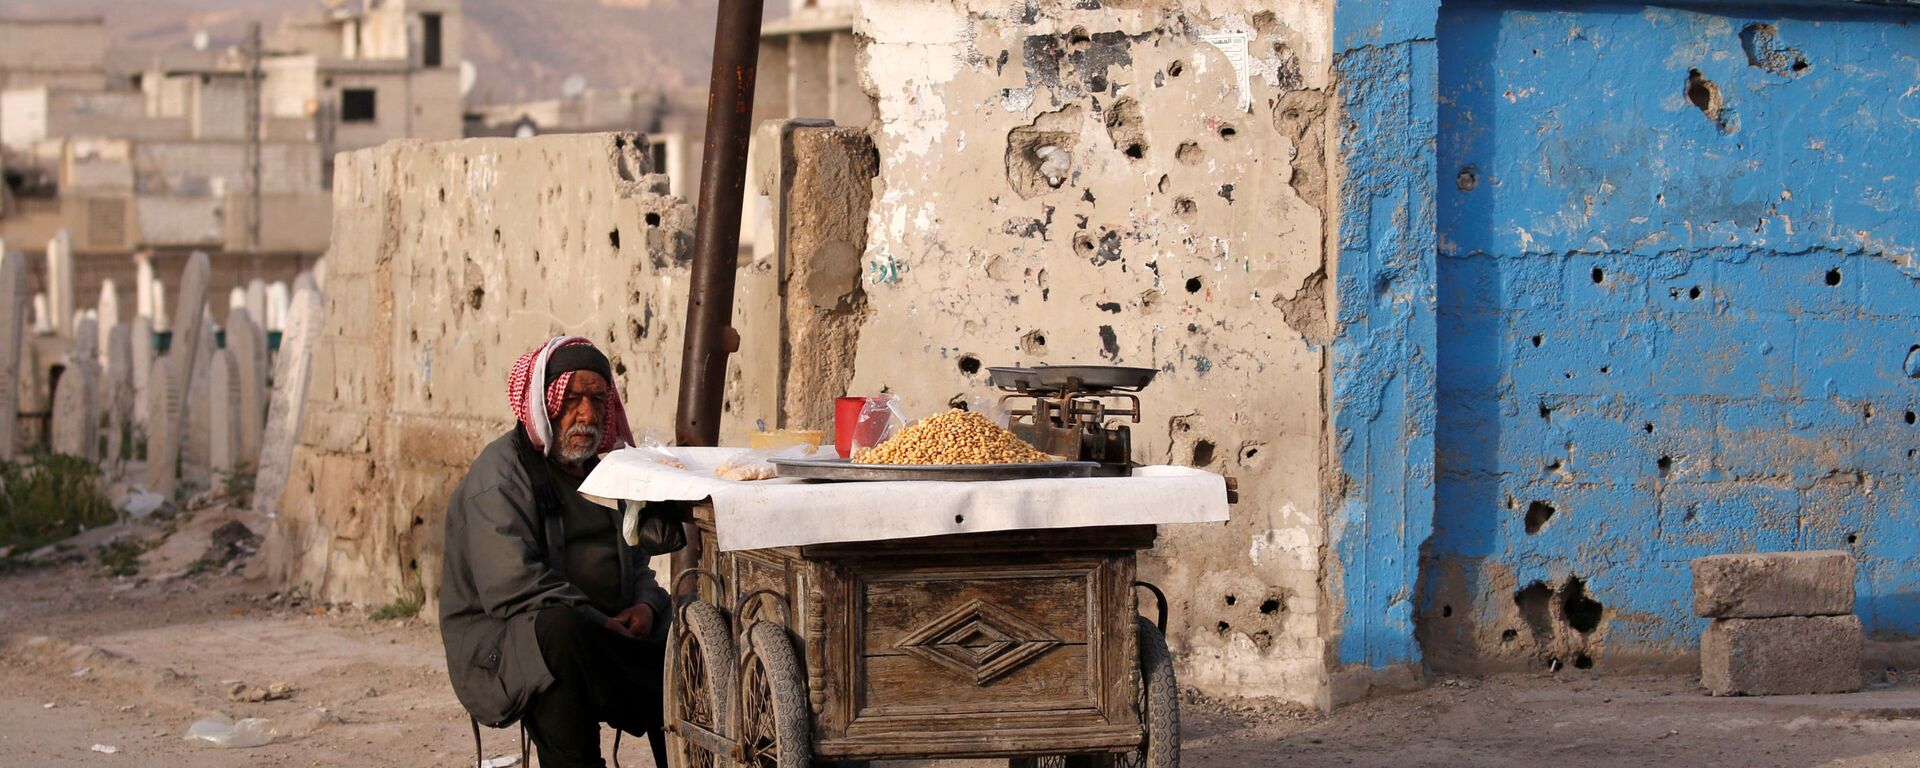 Уличный продавец в Думе, пригороде Дамаска, Сирия - Sputnik Абхазия, 1920, 08.06.2021